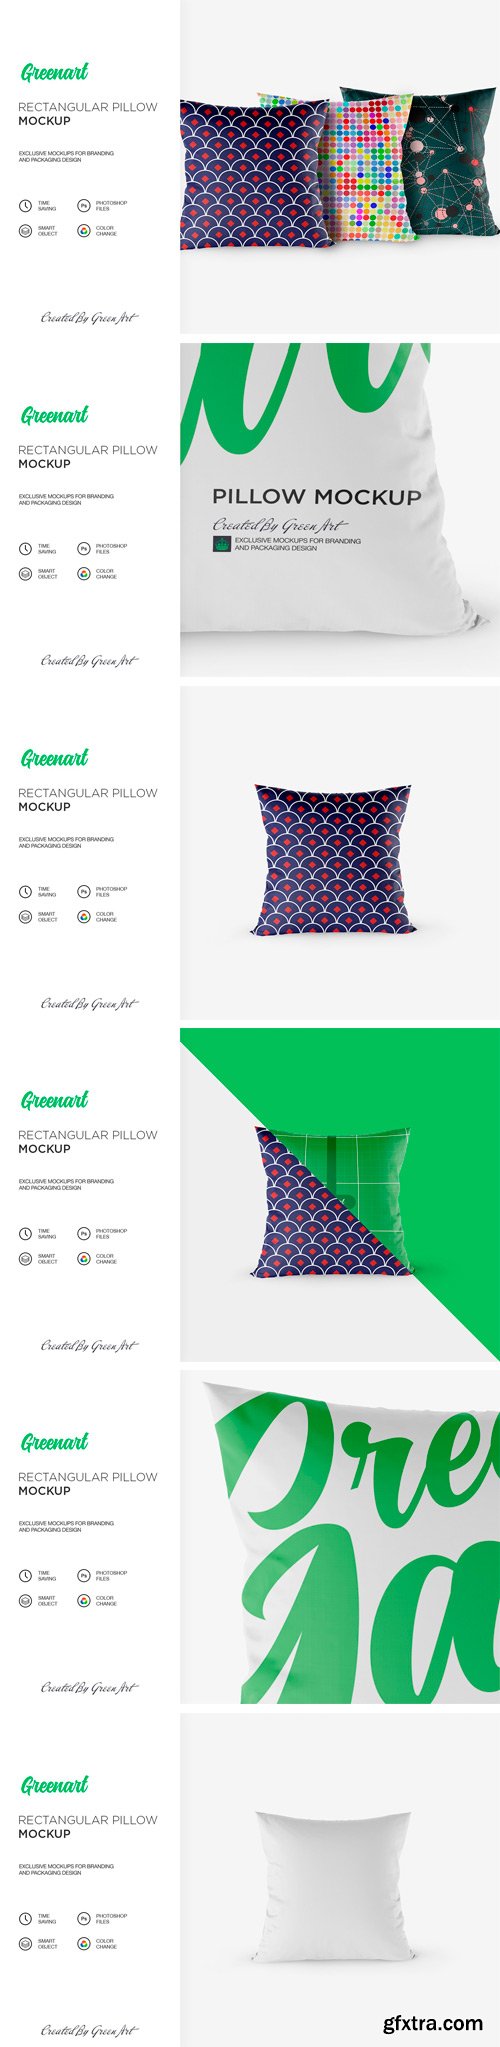 CM - Rectangular Pillow Mockup 2350138